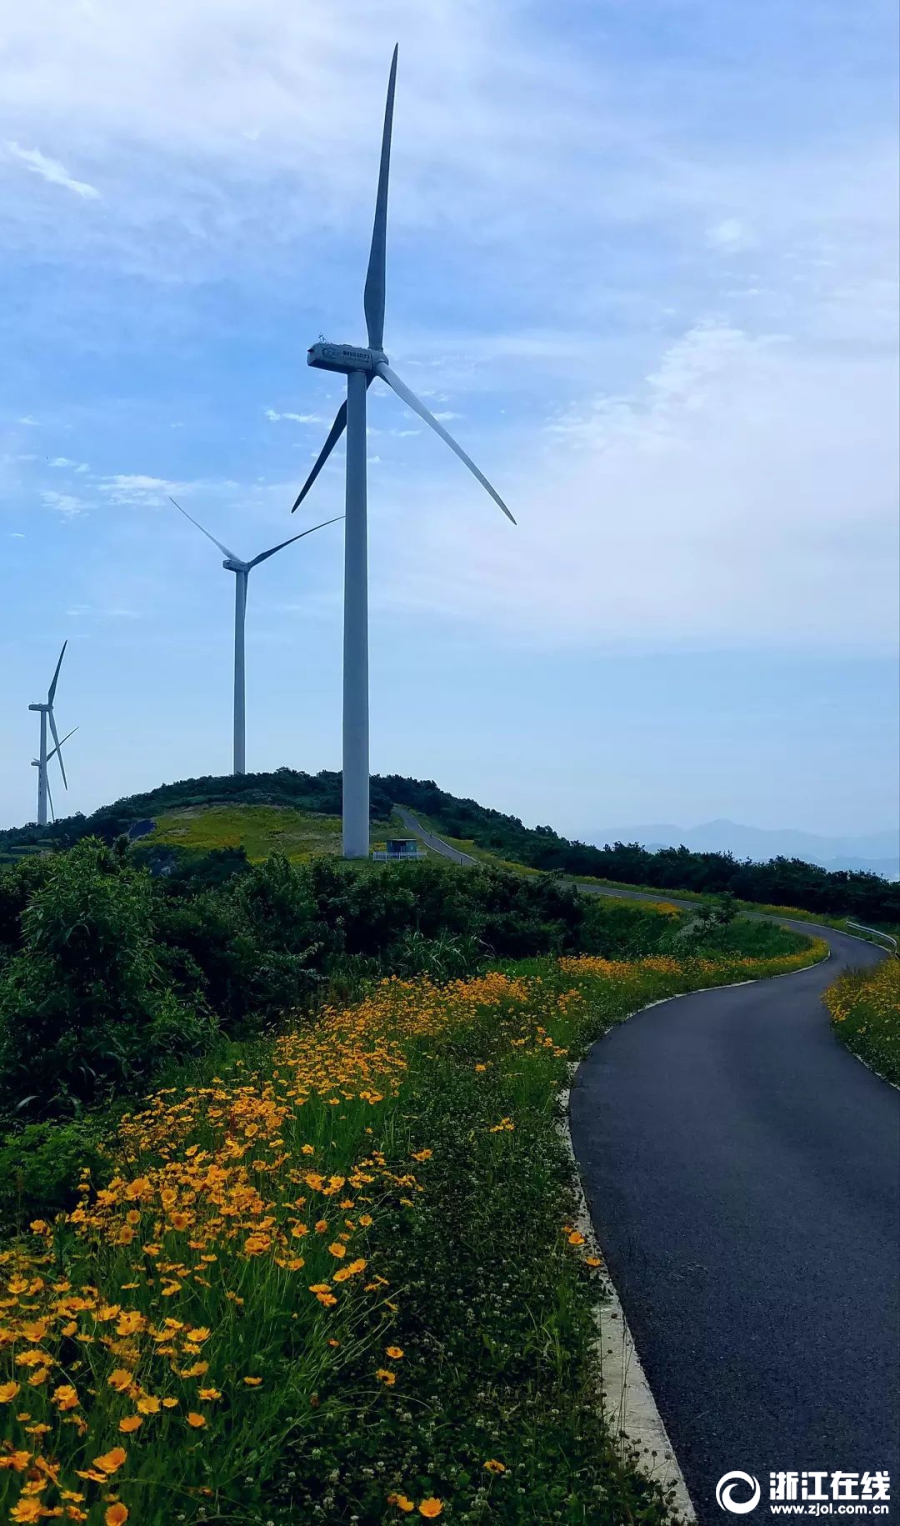 宁波一条风电工程道路 变身“最美鲜花风车公路”